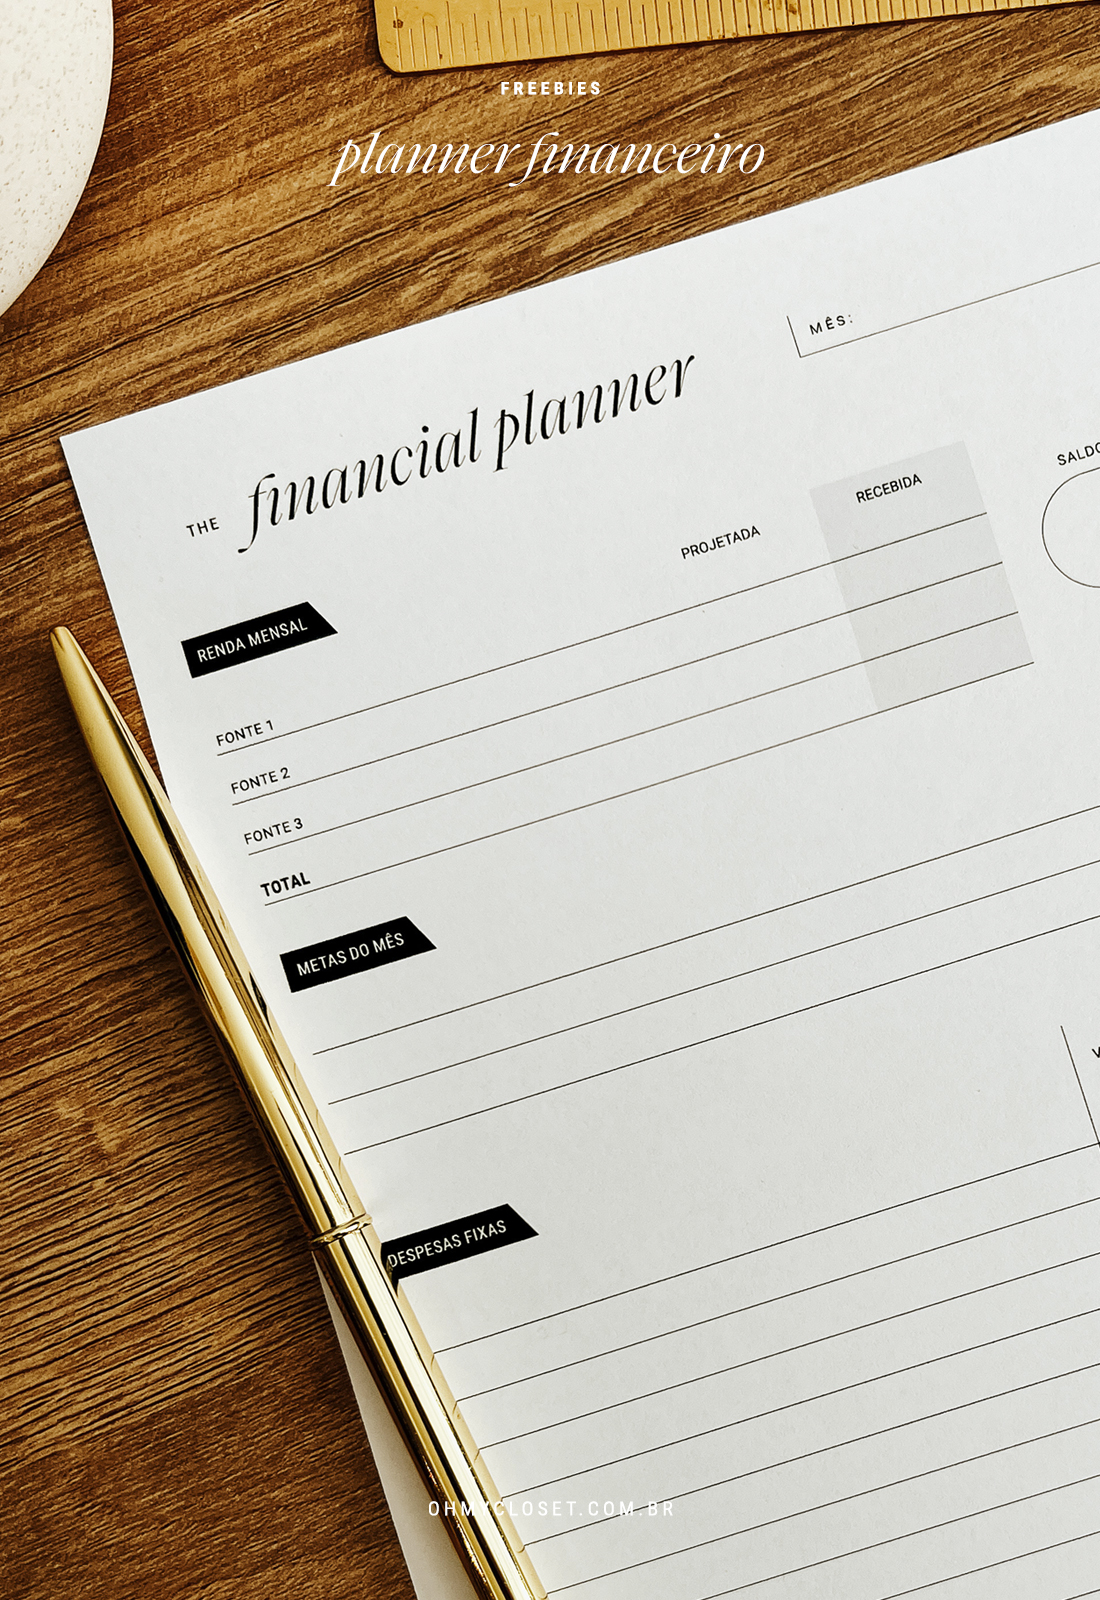 Planner financeiro grátis para download com renda mensal, metas do mês e despesas fixas.